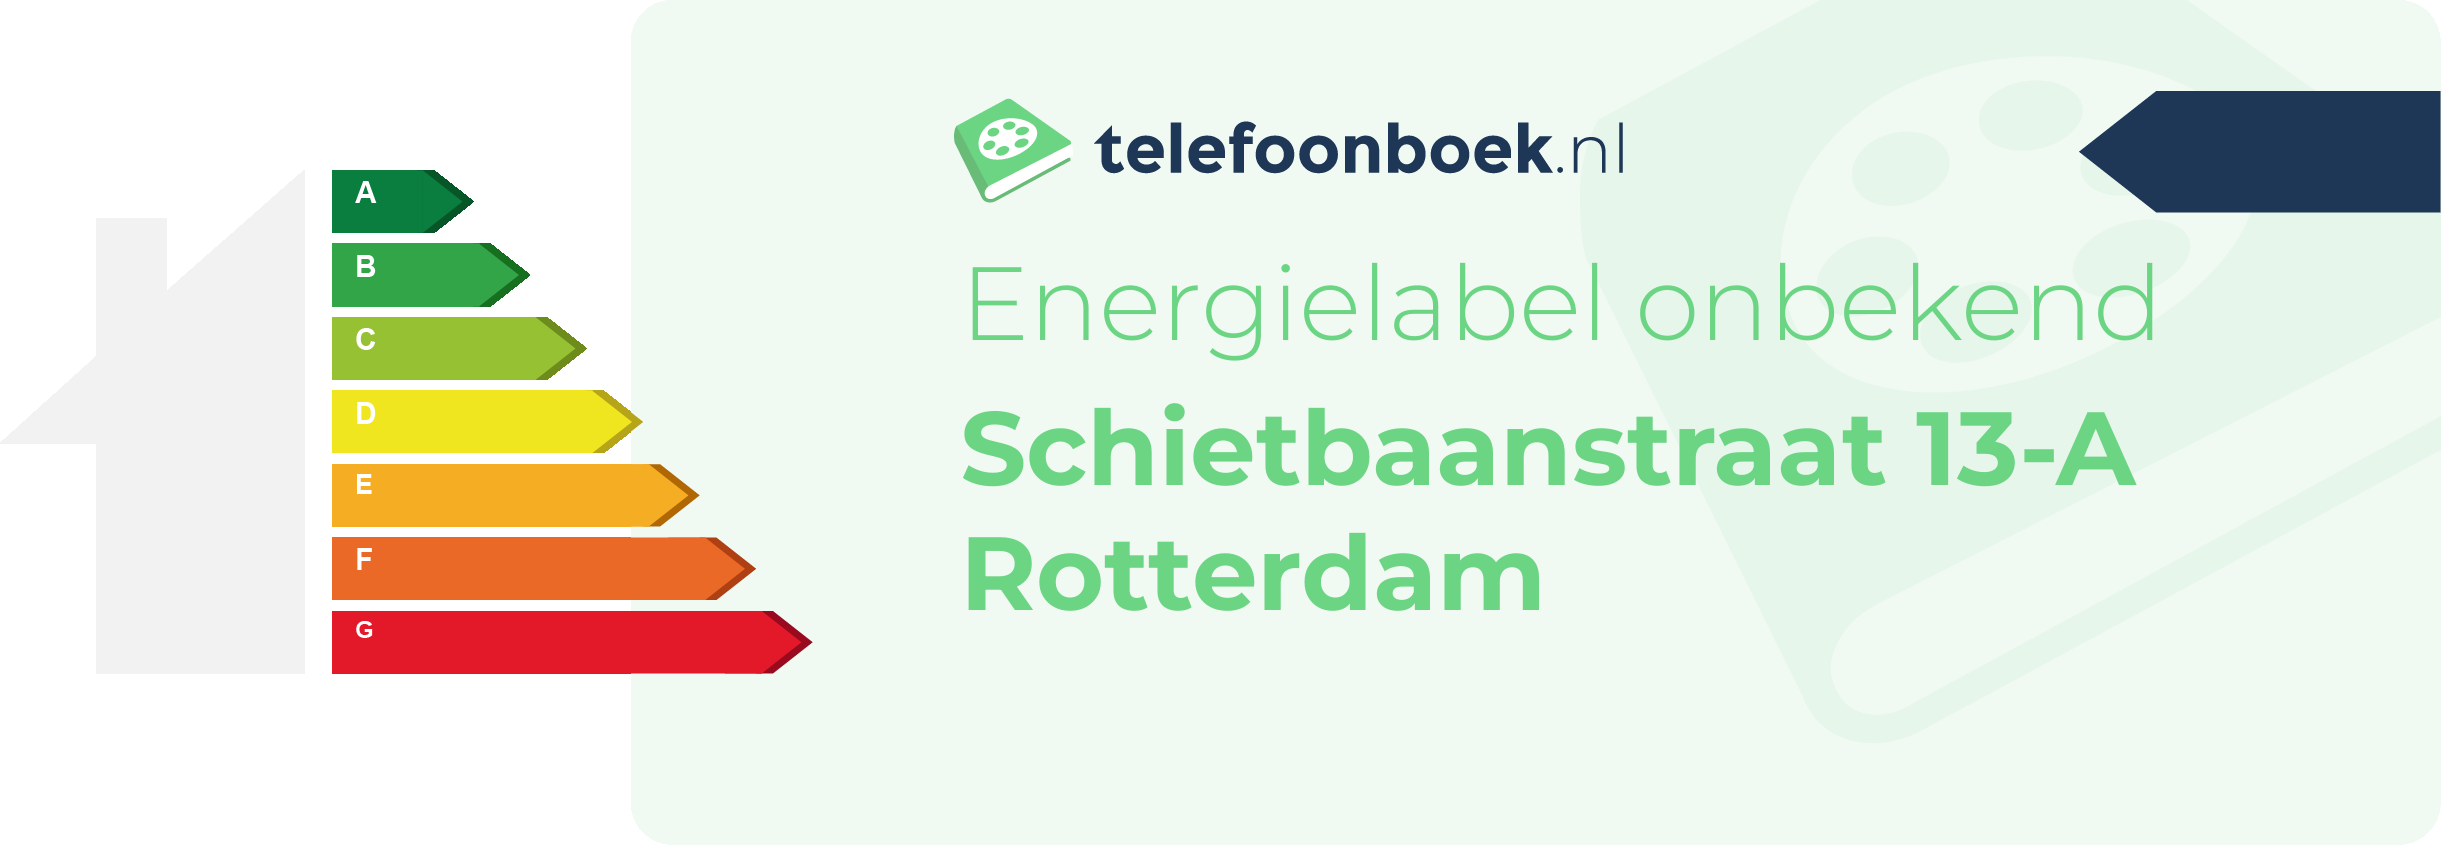 Energielabel Schietbaanstraat 13-A Rotterdam